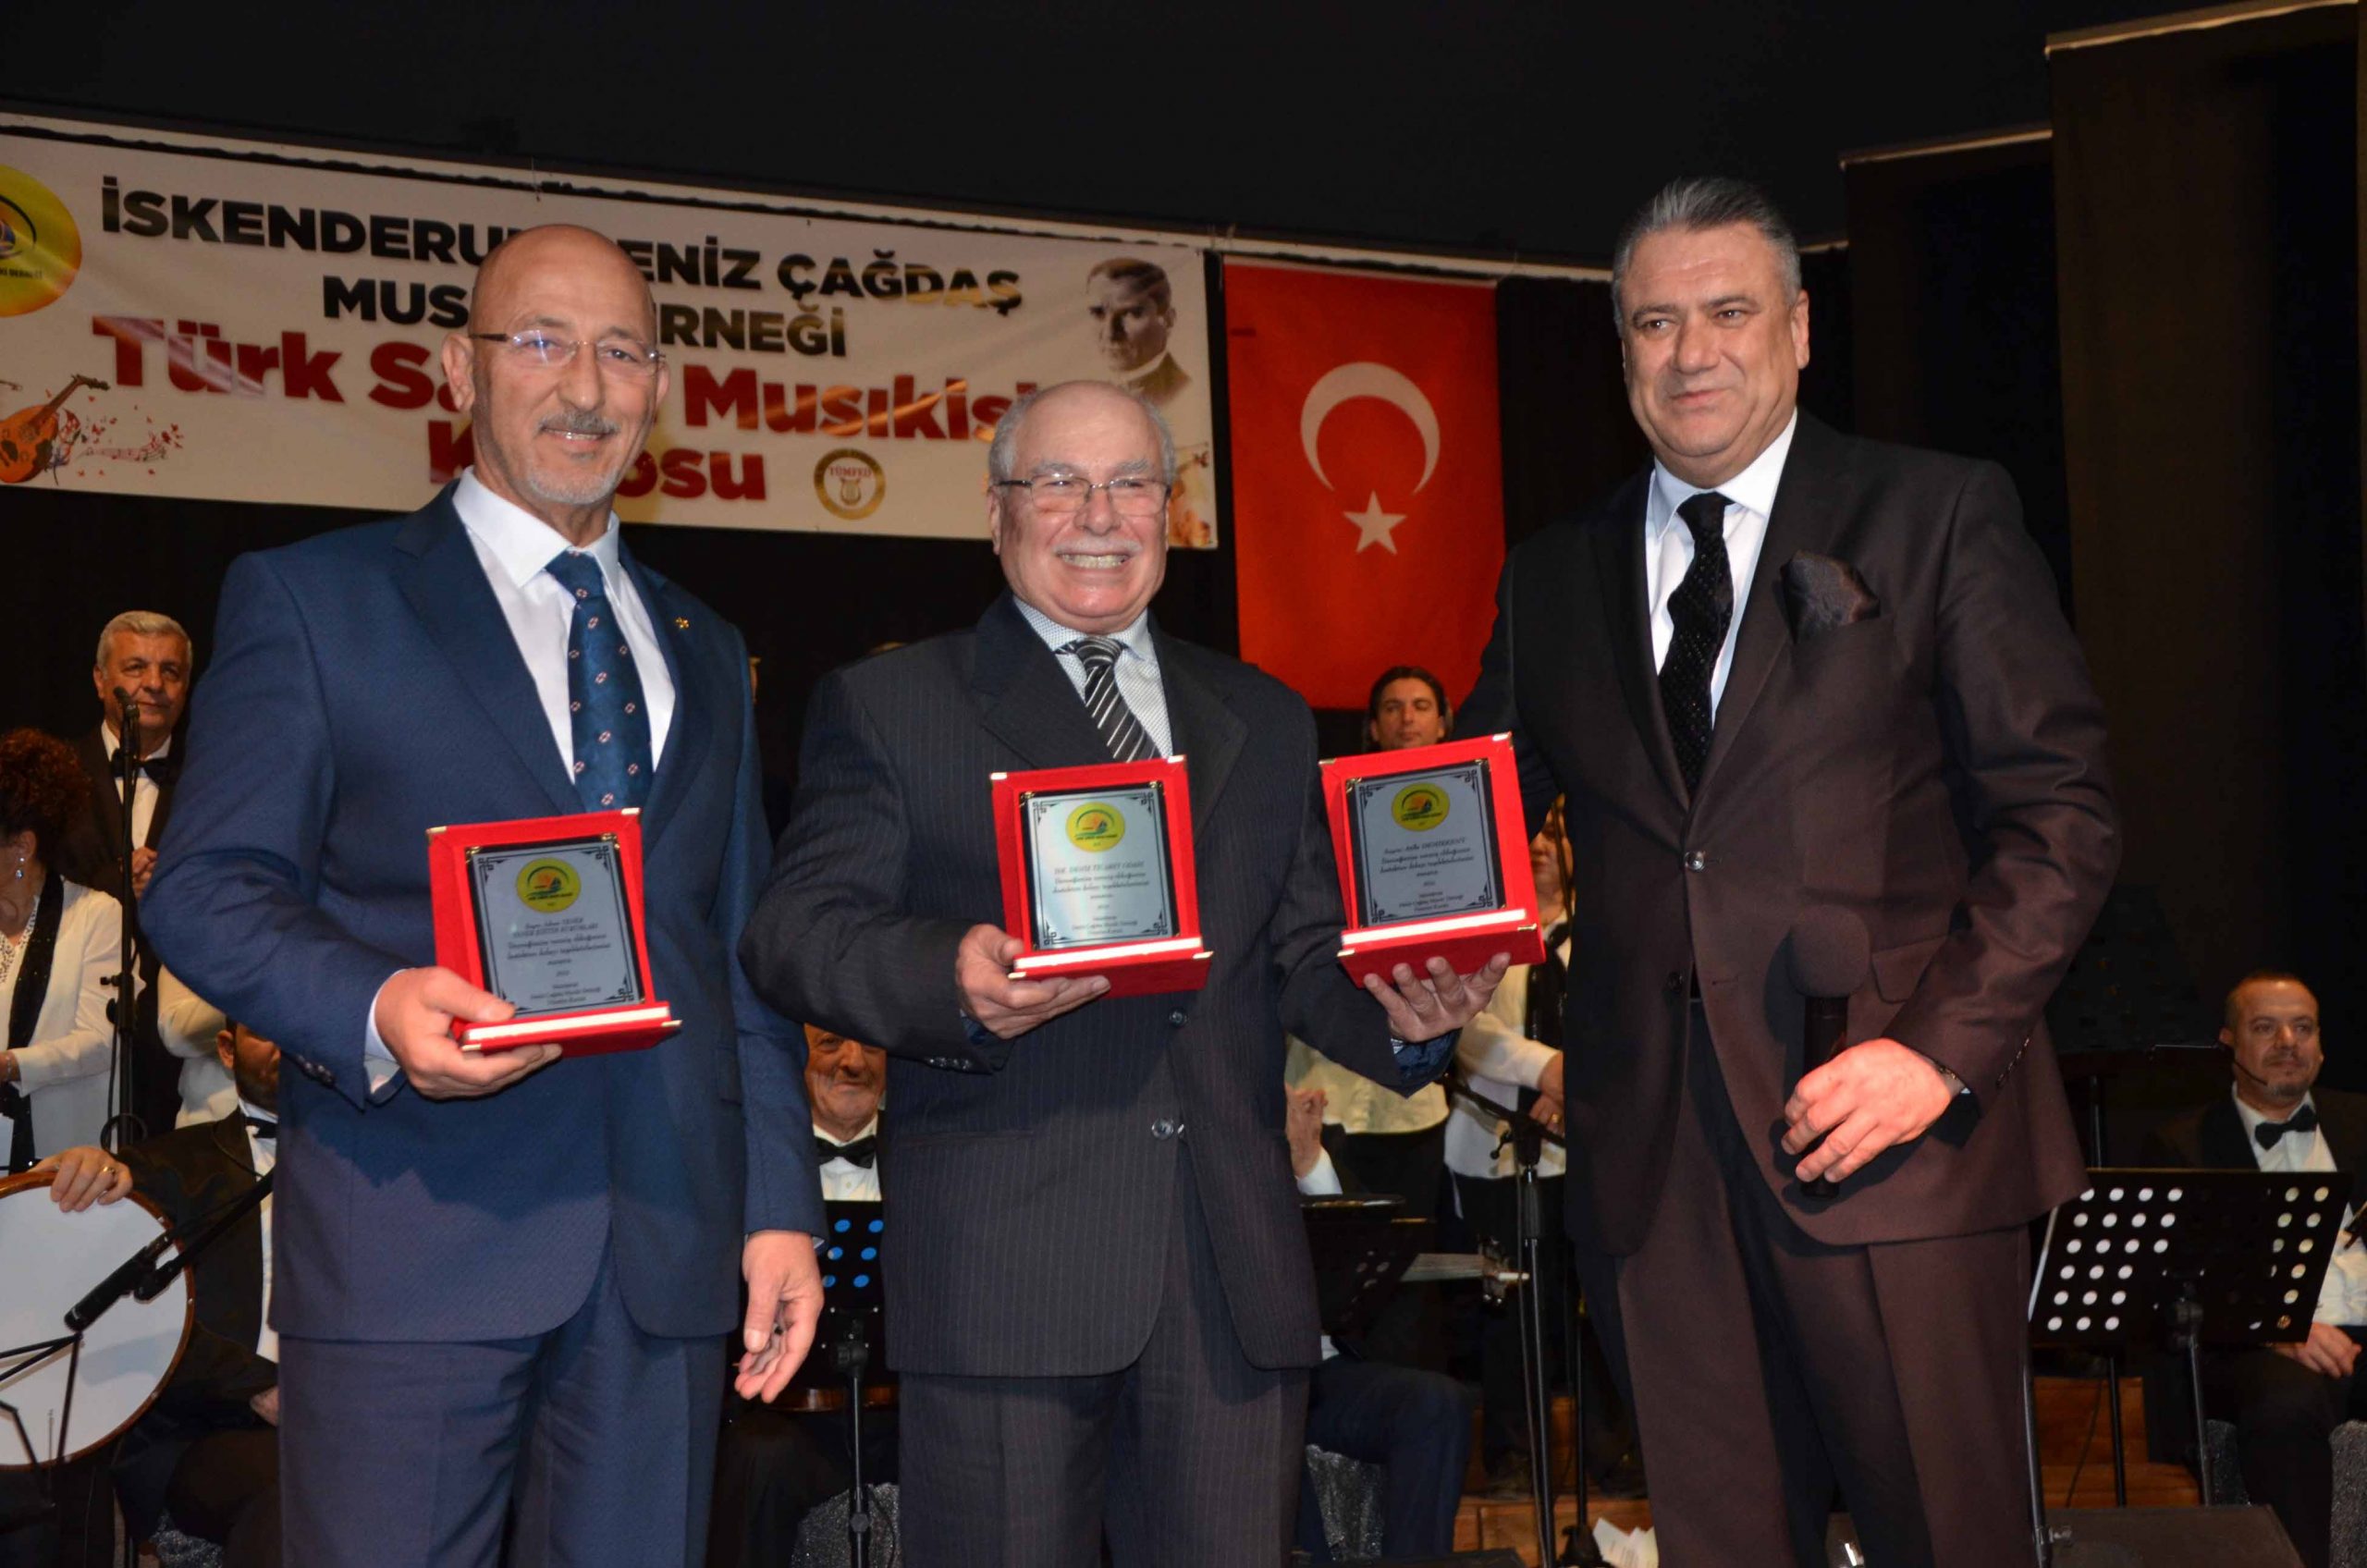 Türk Sanat Müziği Severler Bu konserde Buluştu